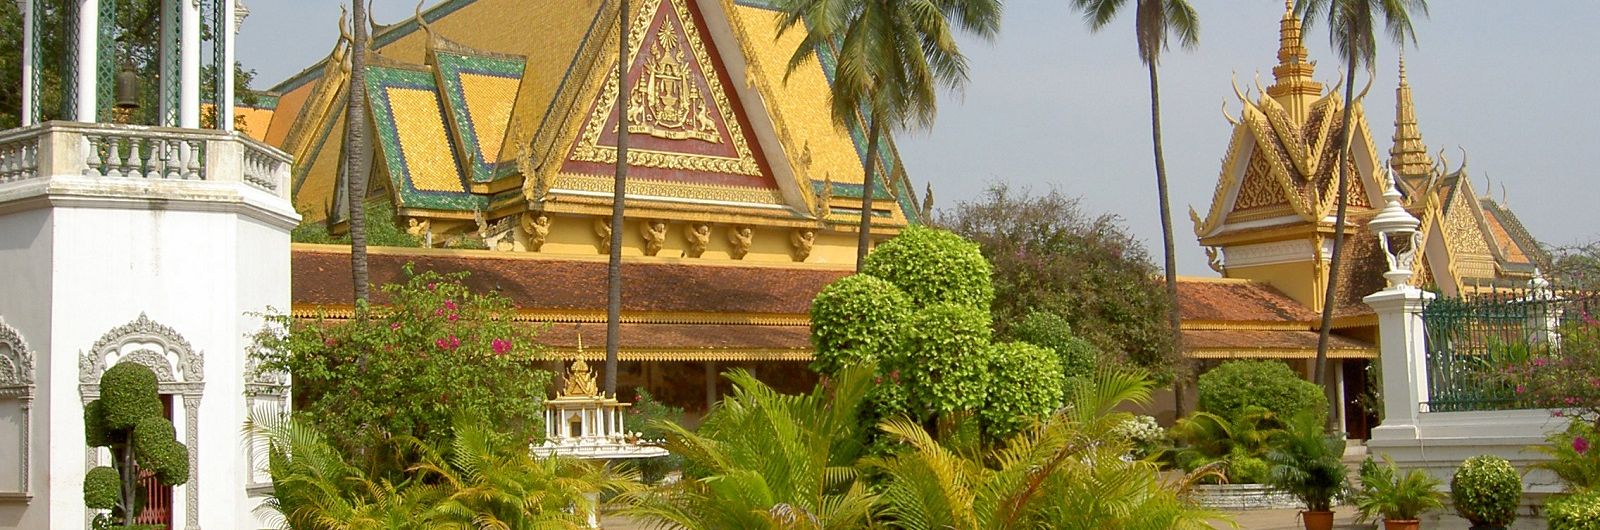 palacio en phnom penh camboya